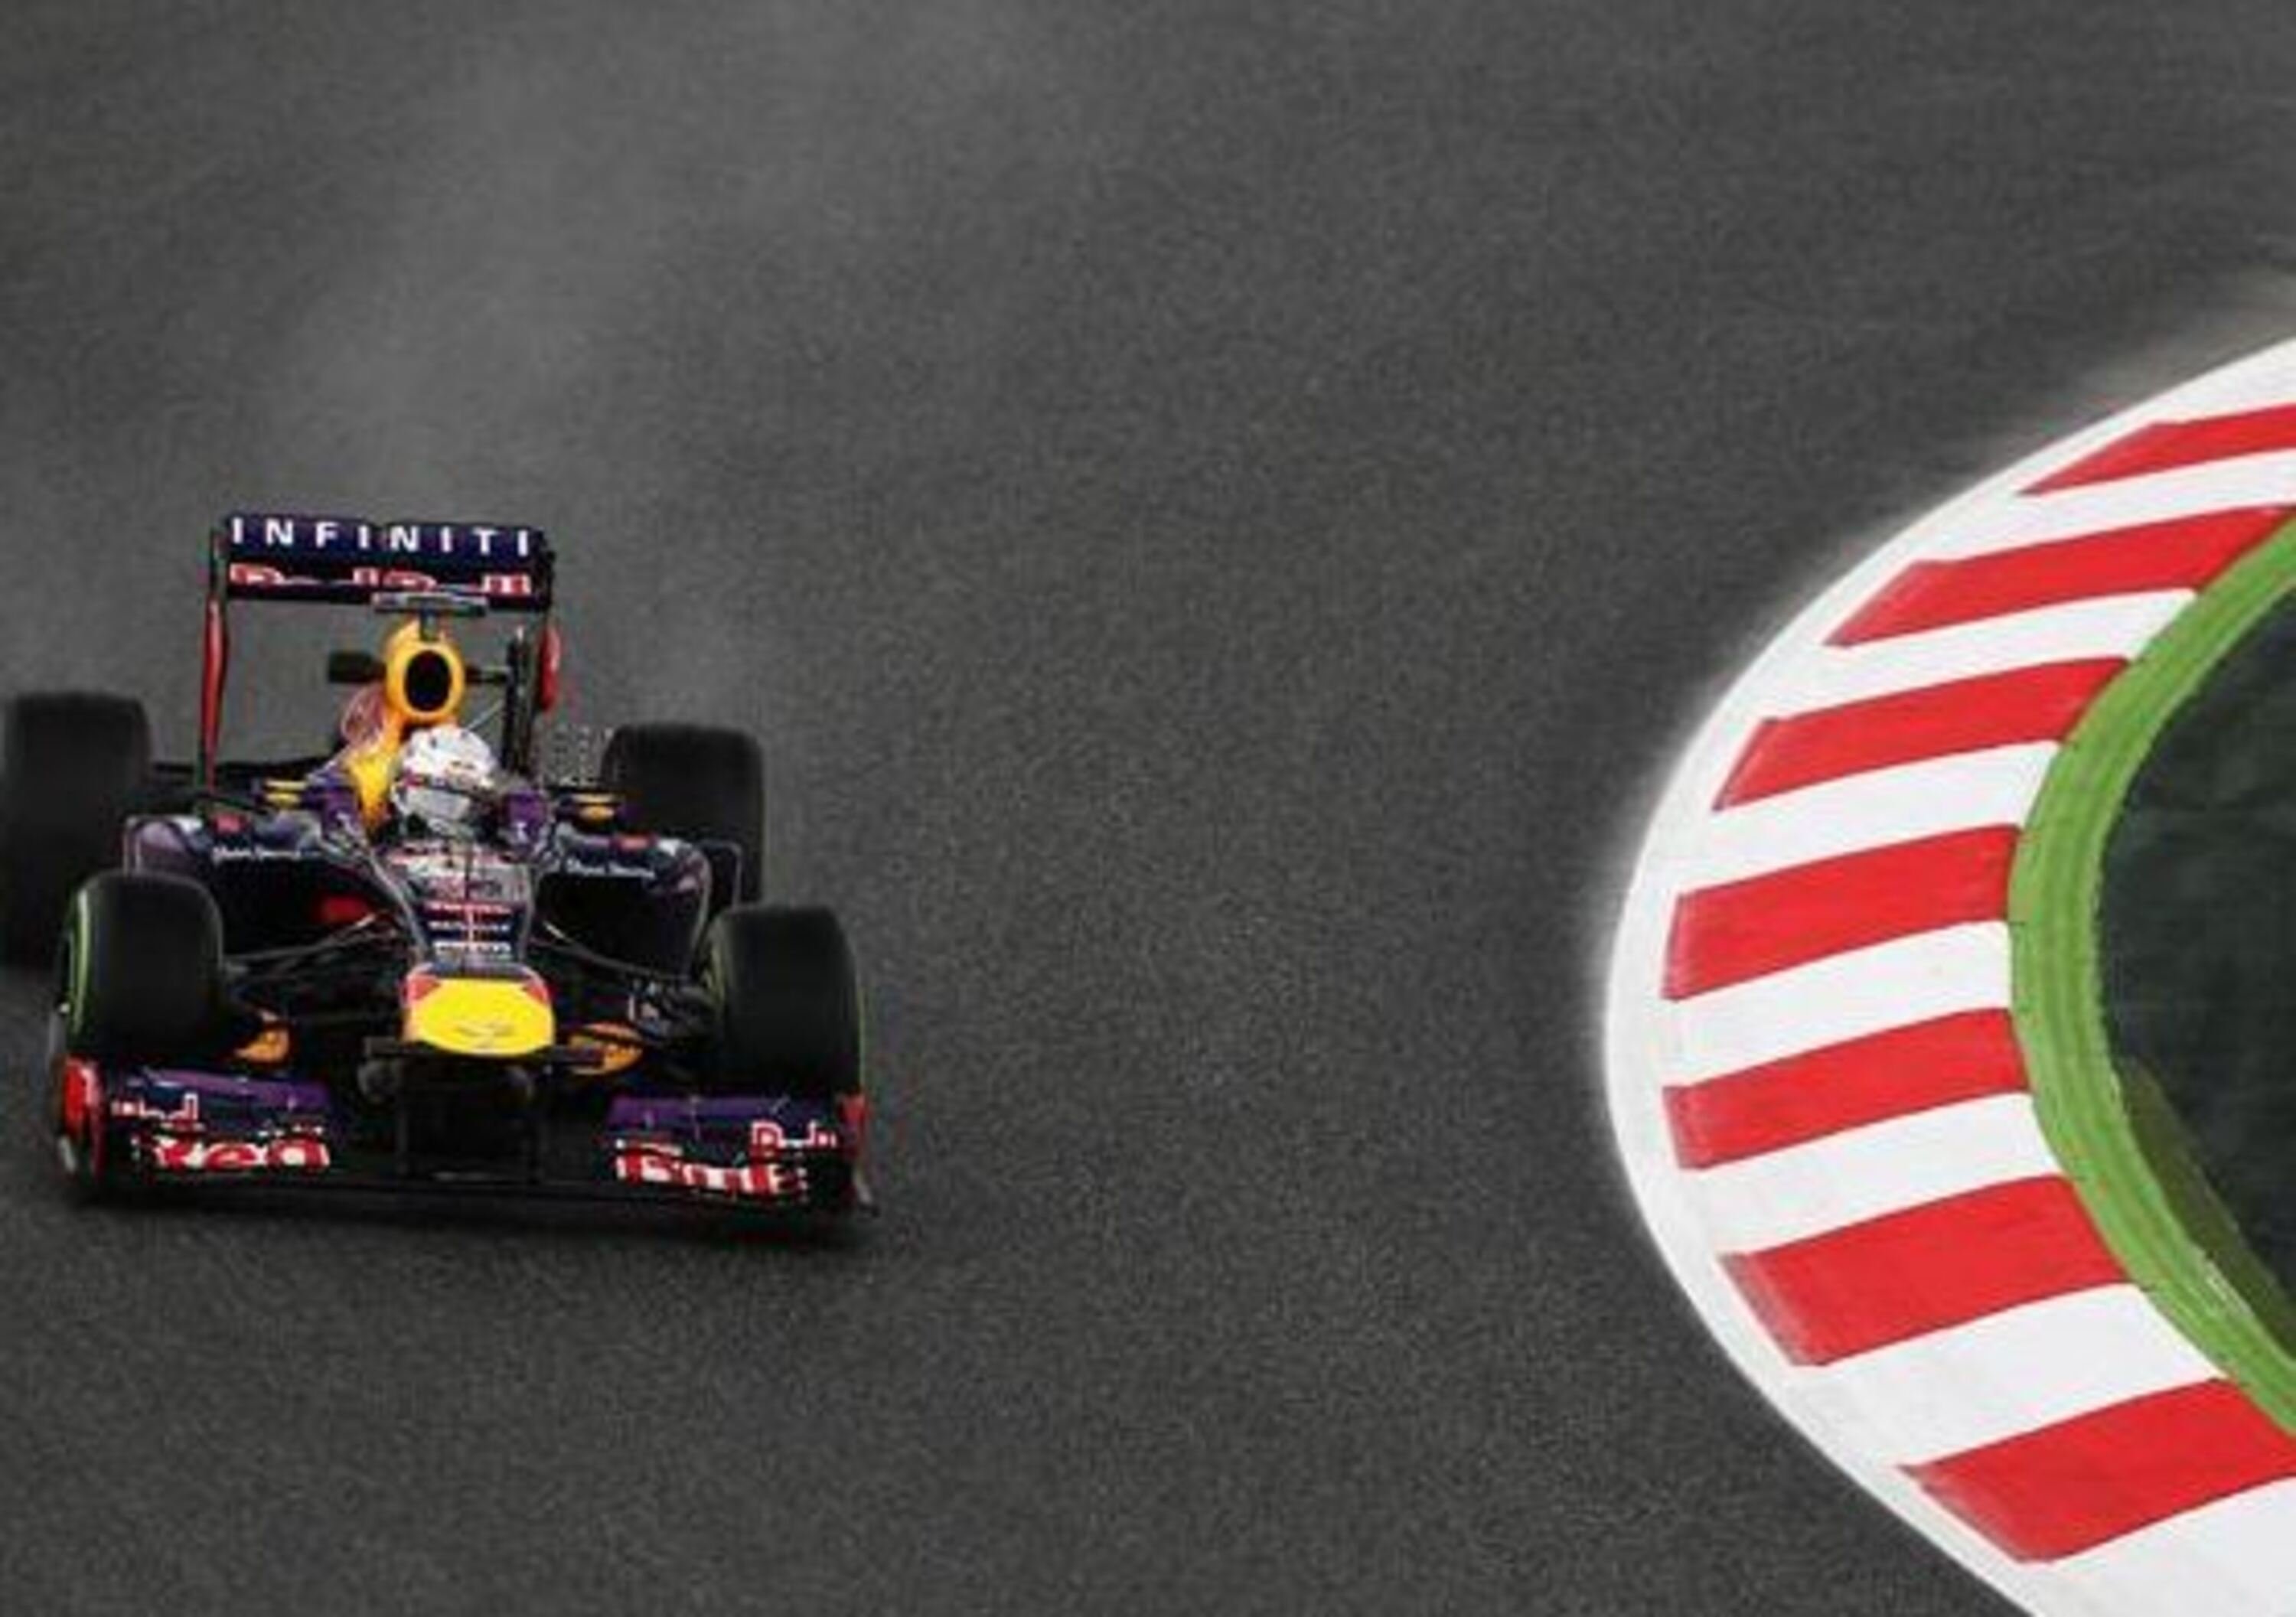 F1 GP Spagna: Vettel comanda la seconda sessione di libere